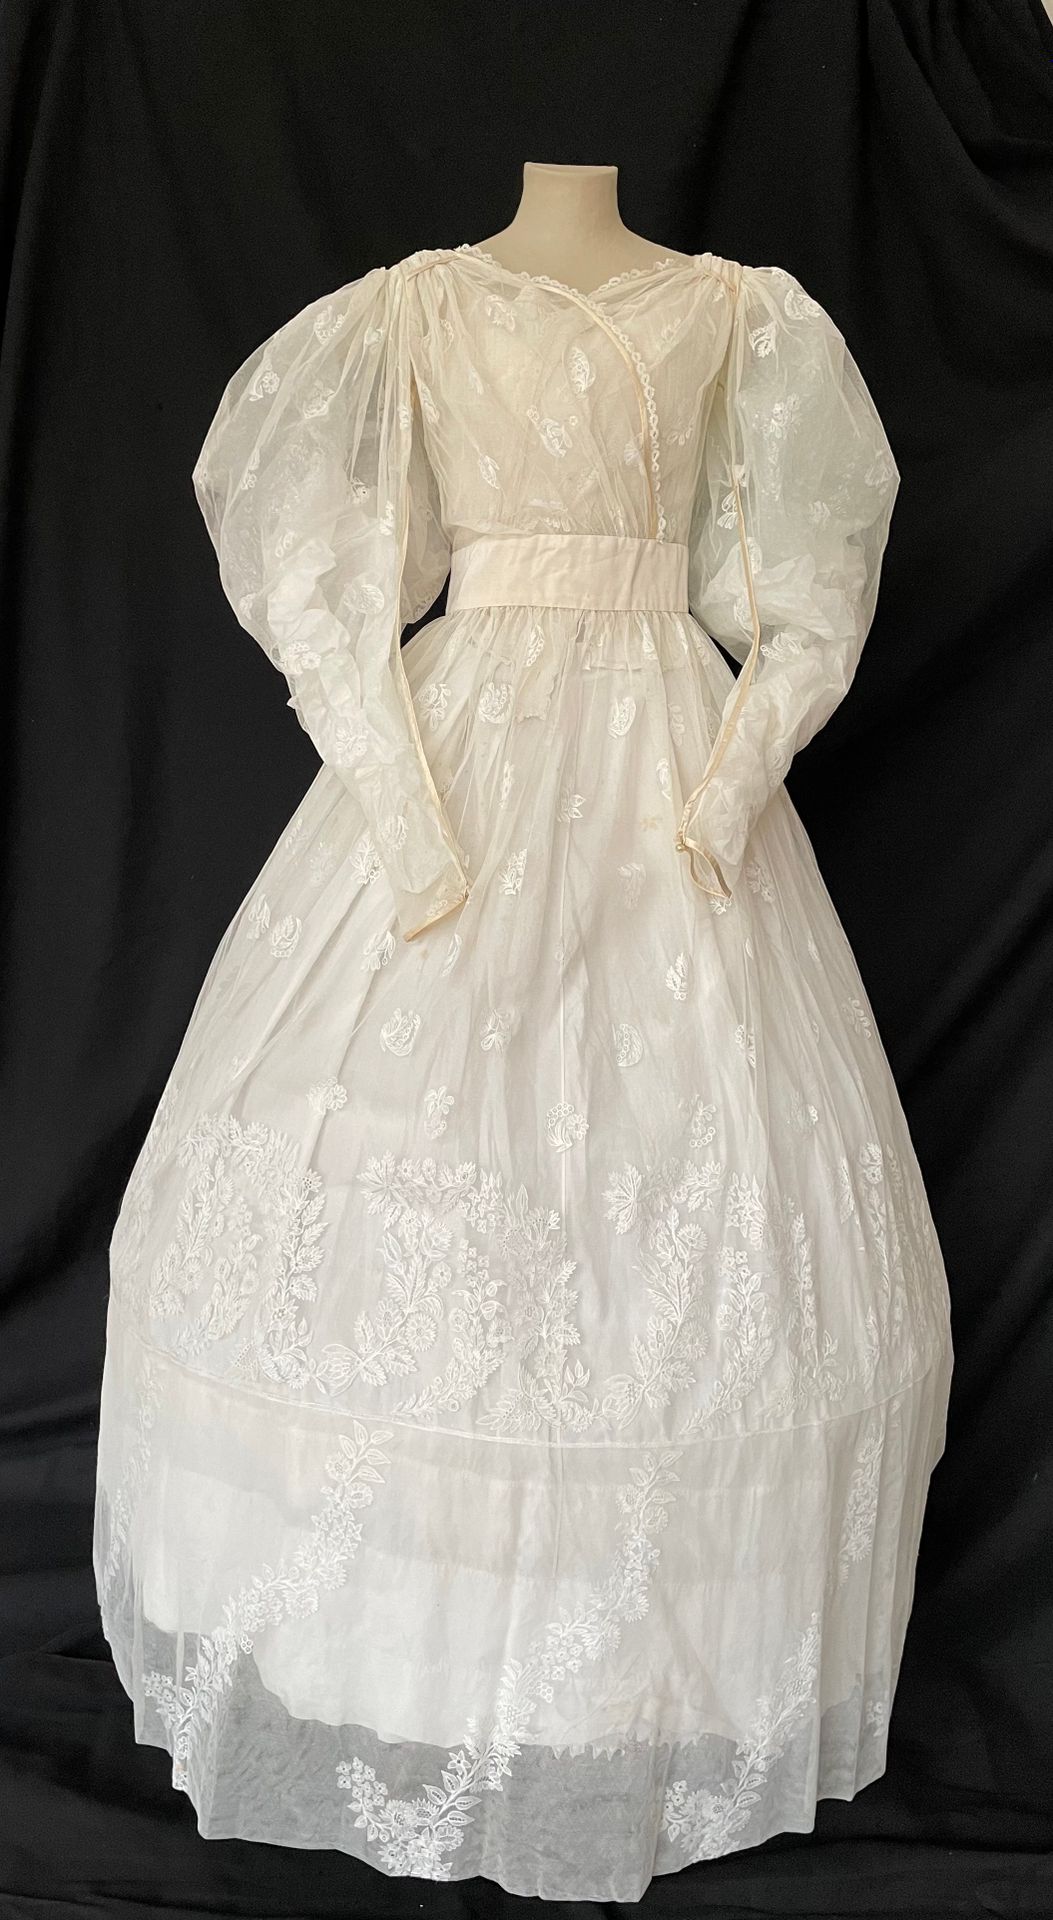 Null 舞会或婚礼礼服，法国，约1837年，浪漫主义时期。 
裙子由薄纱、白色刺绣和奶油色缎面的斜面制成，裙摆上装饰着天然花的幼苗和花束。褶皱的上衣在肩部聚集&hellip;